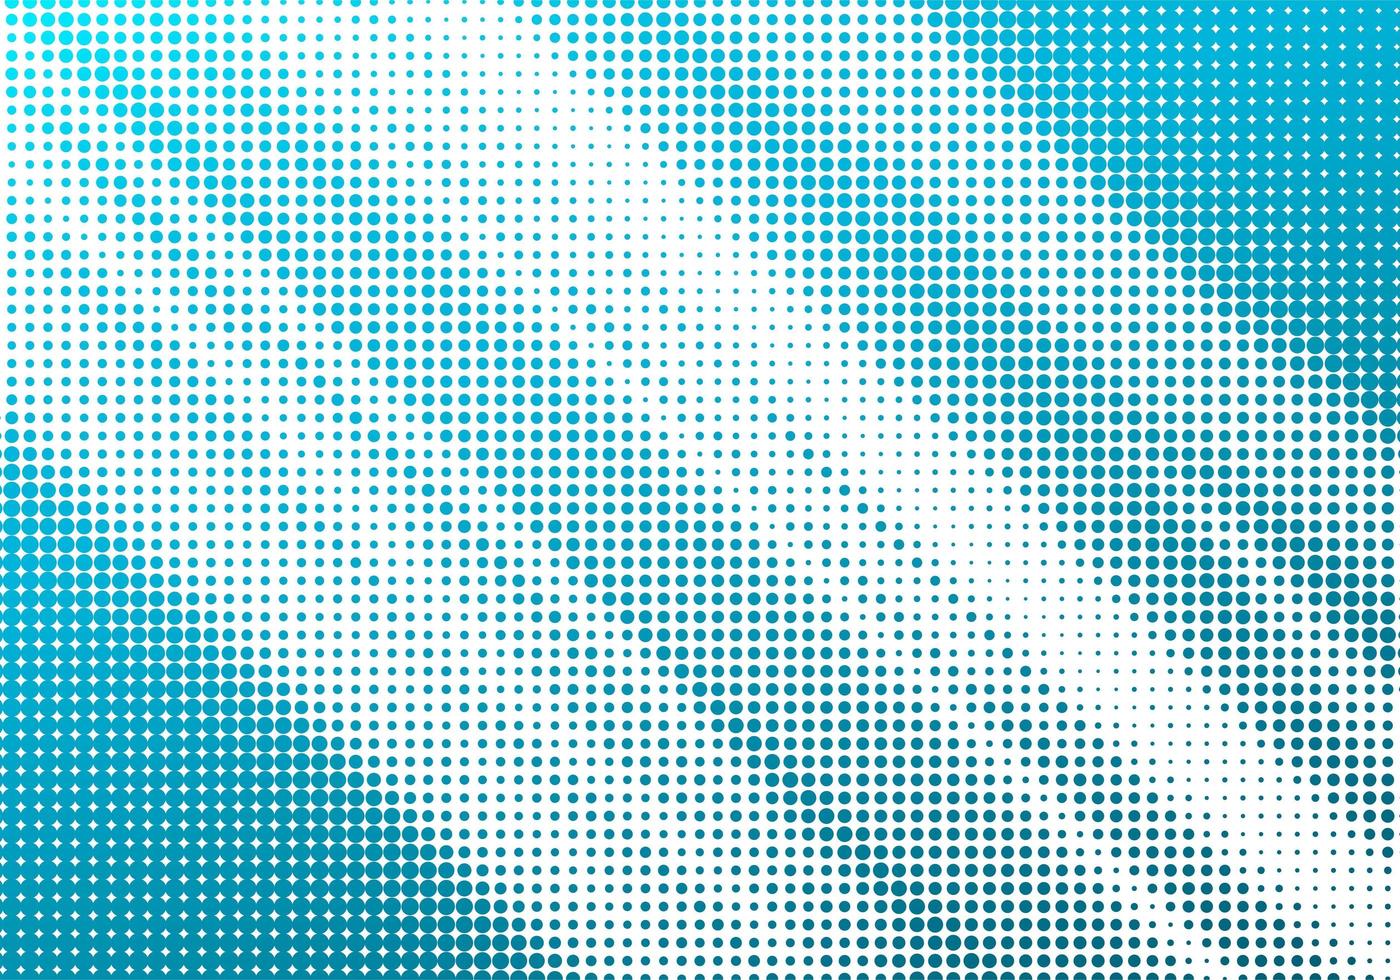 abstrakta blå halvtonade diagonala linjer på vitt vektor